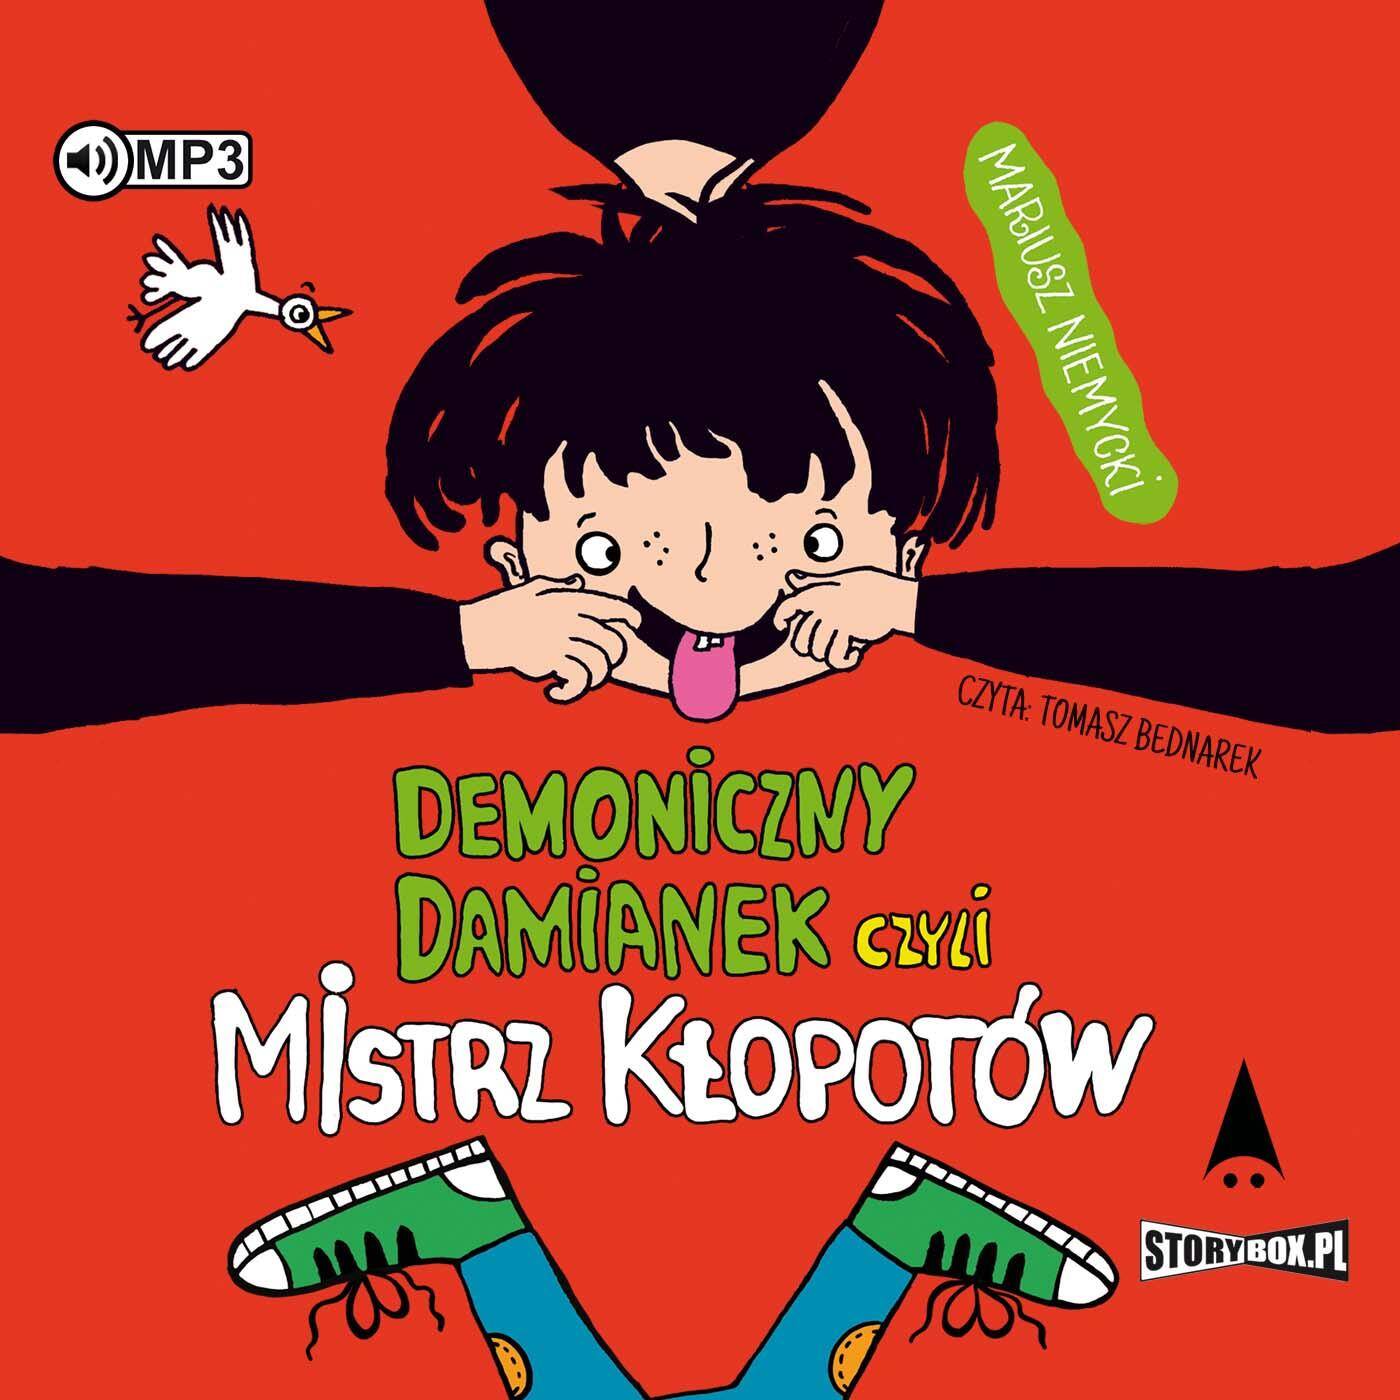 CD MP3 Demoniczny Damianek czyli mistrz kłopotów